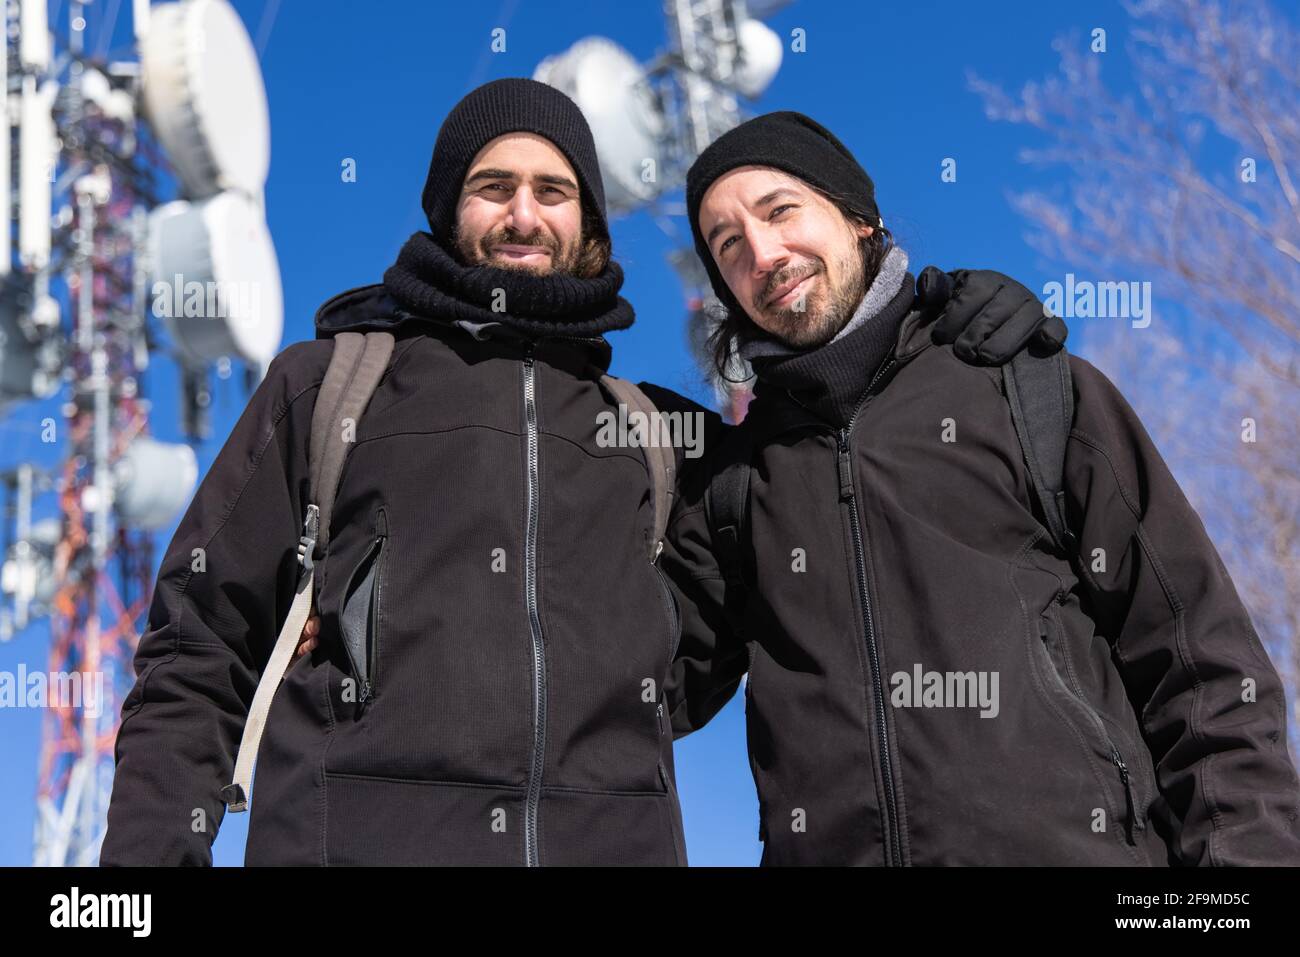 Eine kippbare Aufnahme von zwei Touristen, die in einer verschneiten und kalten Gegend in warmer Kleidung vor den Antennentürmen posieren. Stockfoto